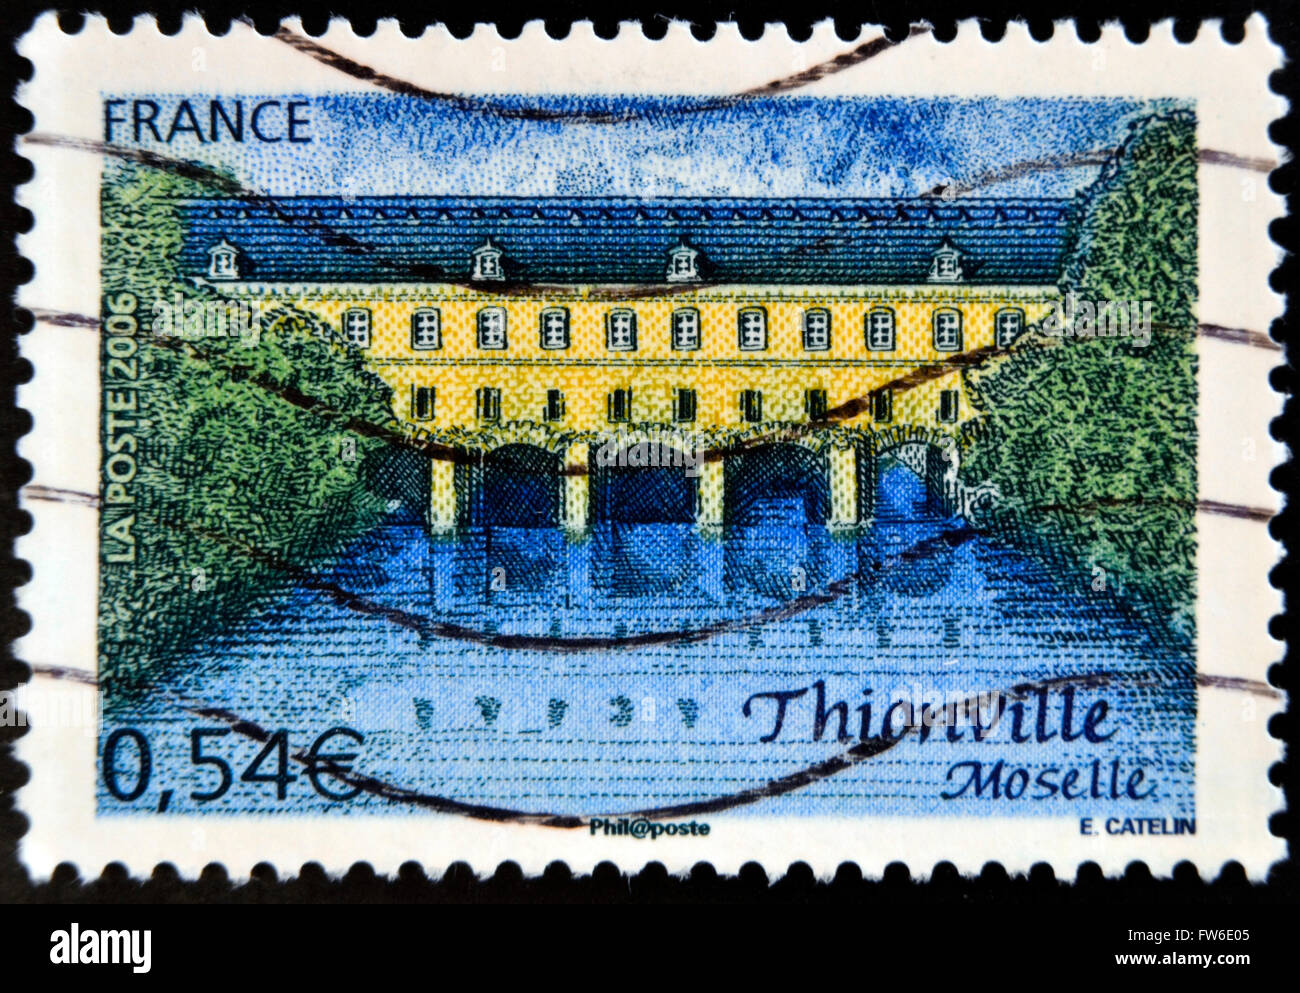 Francia - circa 2006: sello impreso en Francia muestra Thionville Moselle, circa 2006 Foto de stock